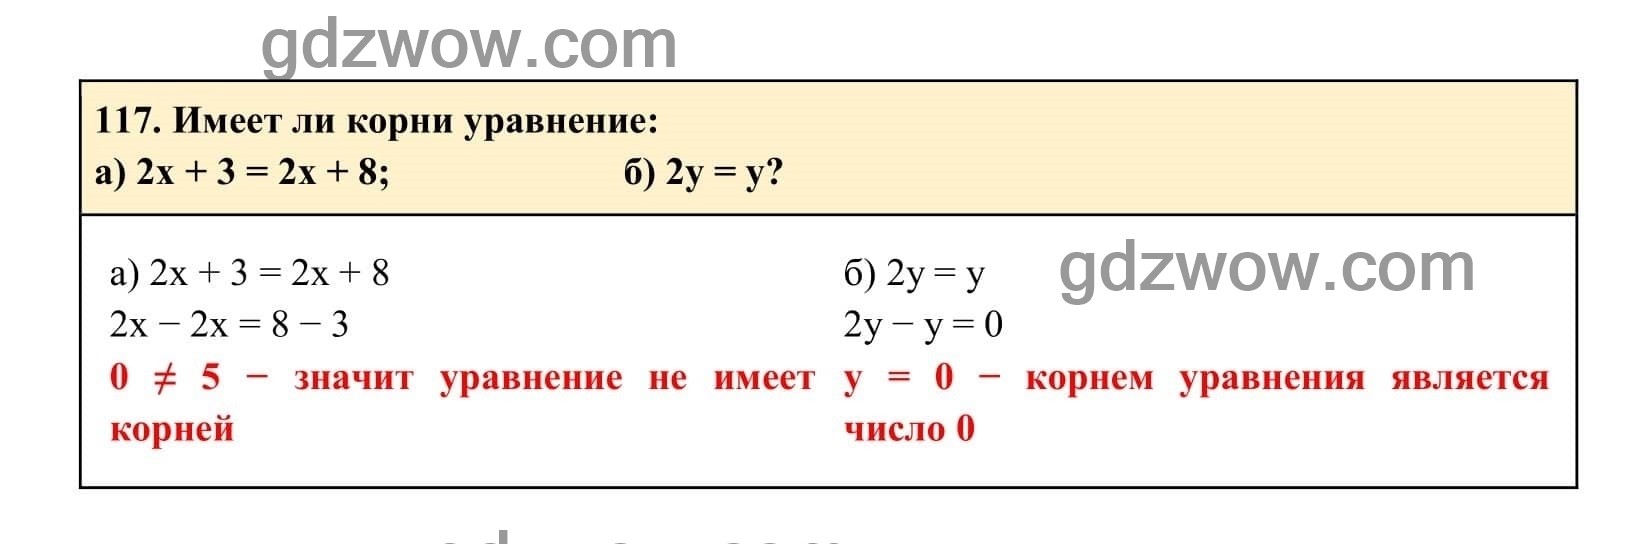 Упражнение 117 - ГДЗ по Алгебре 7 класс Учебник Макарычев (решебник) - GDZwow